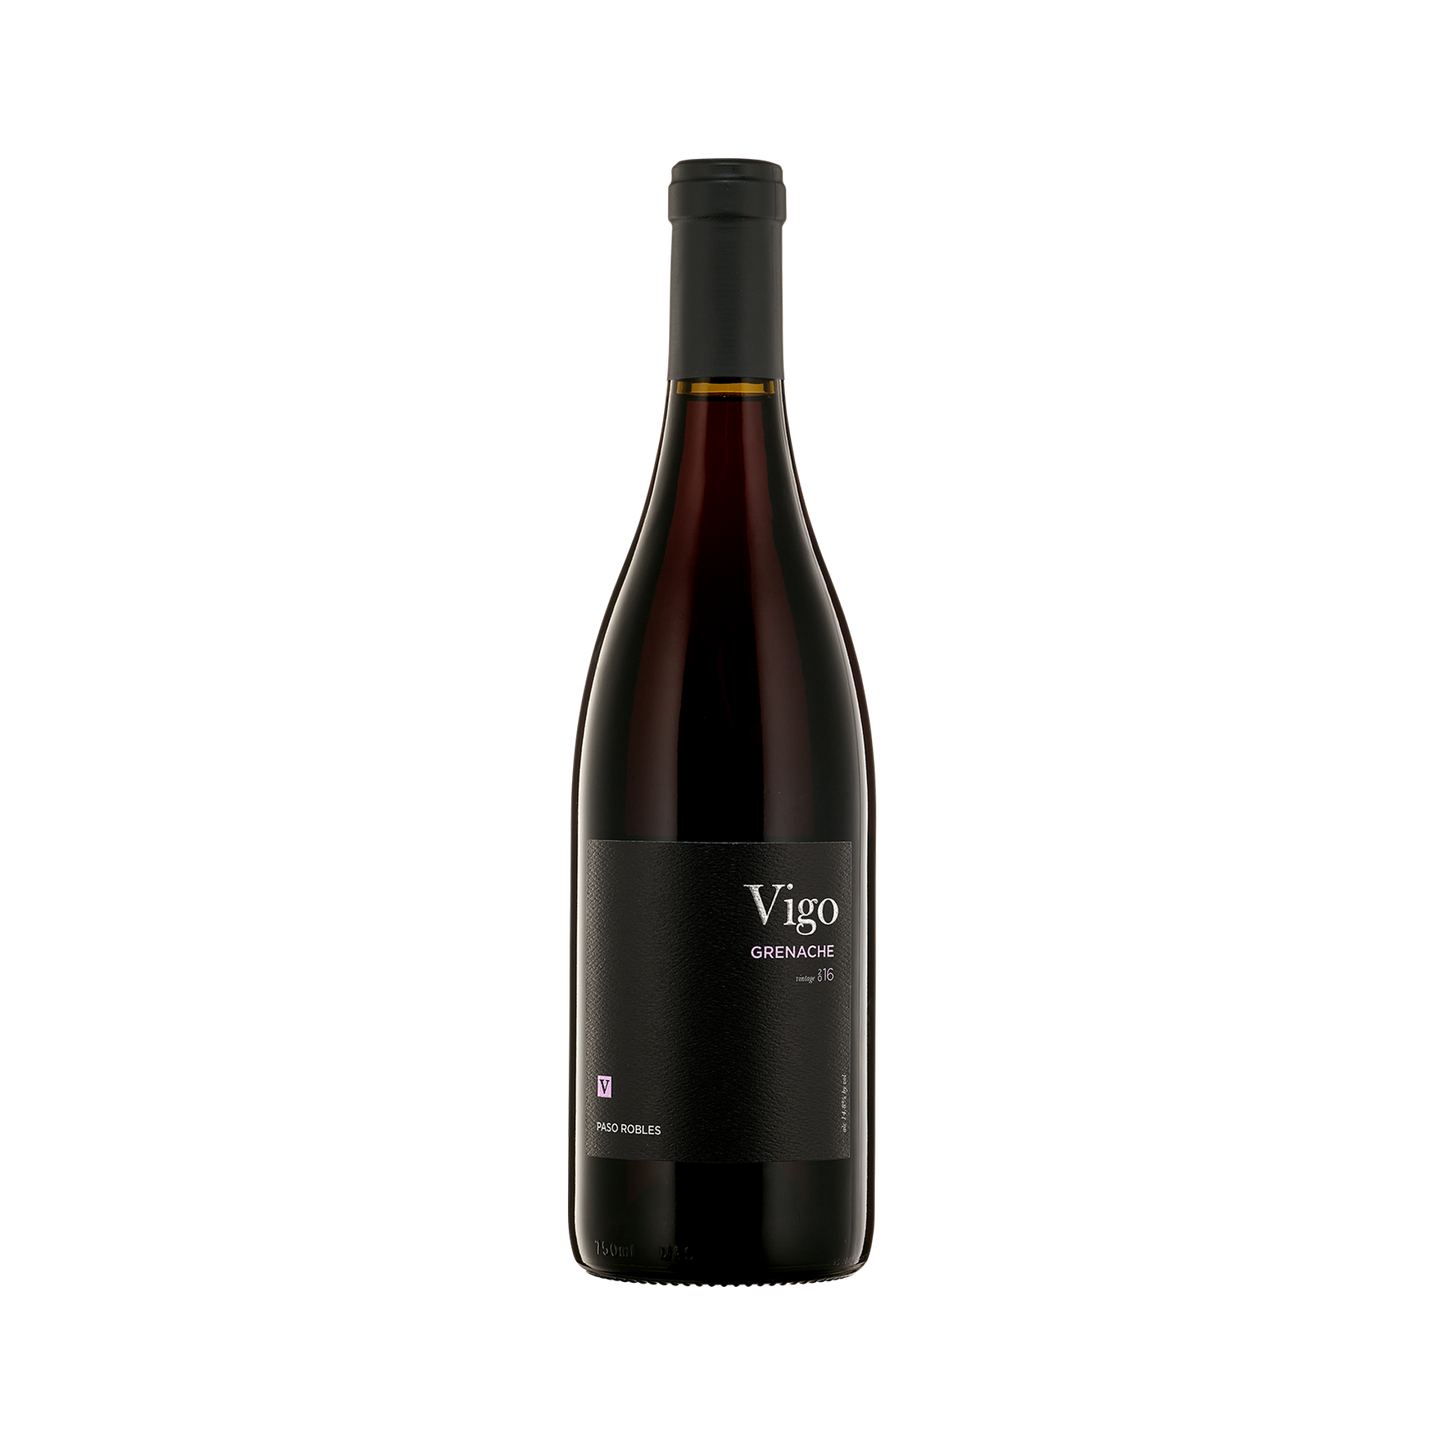 A bottle of Vigo 2016 Grenache